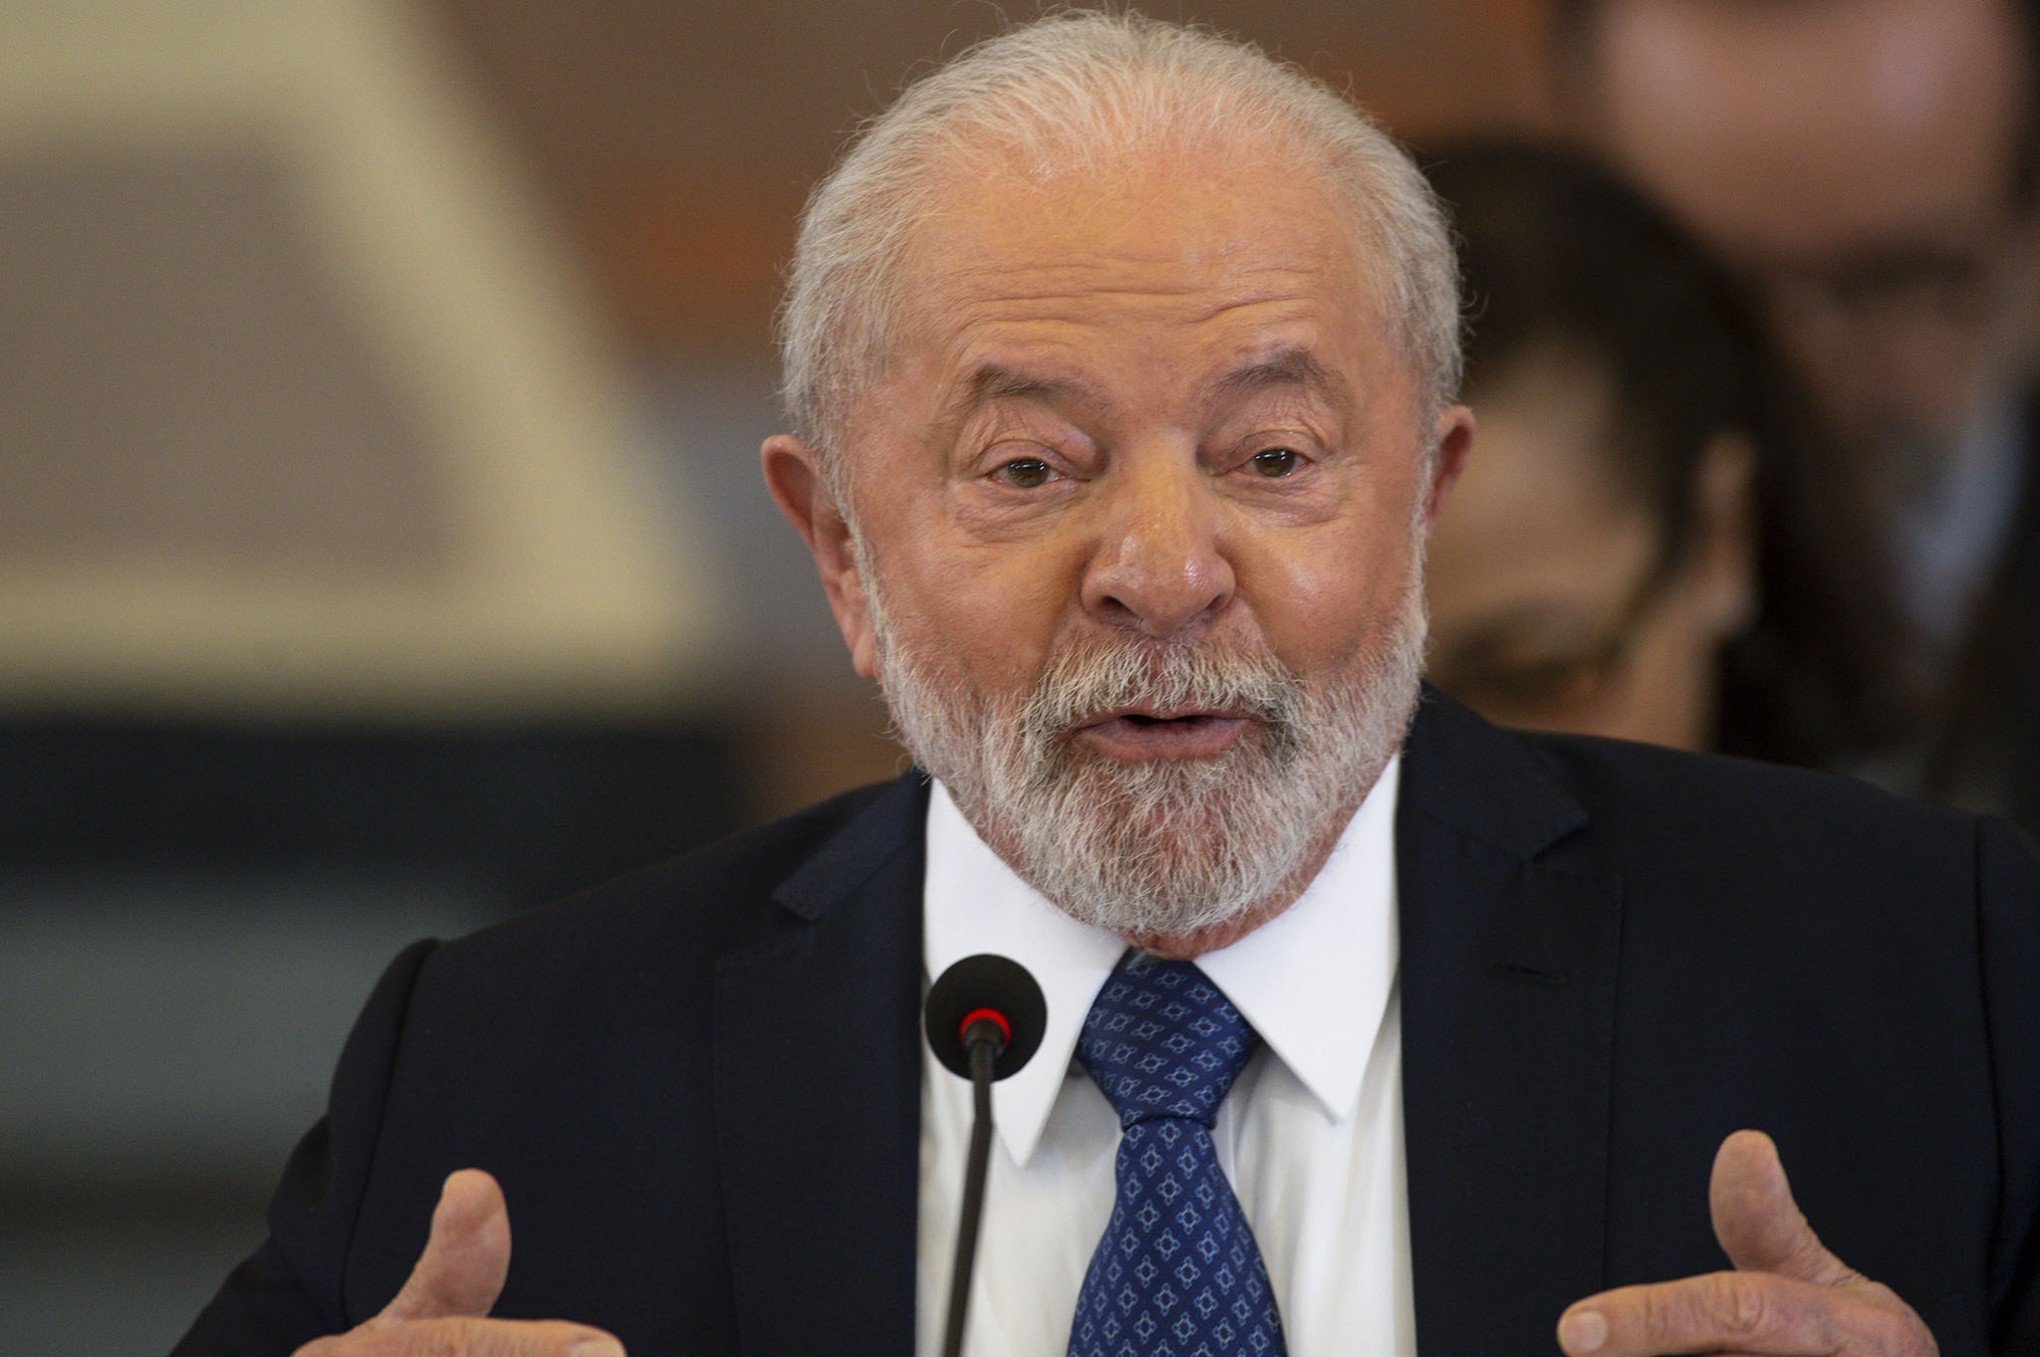 PREÇO DAS PASSAGENS AÉREAS: "Vamos chamar as empresas de aviação para discutir o que está acontecendo", diz Lula